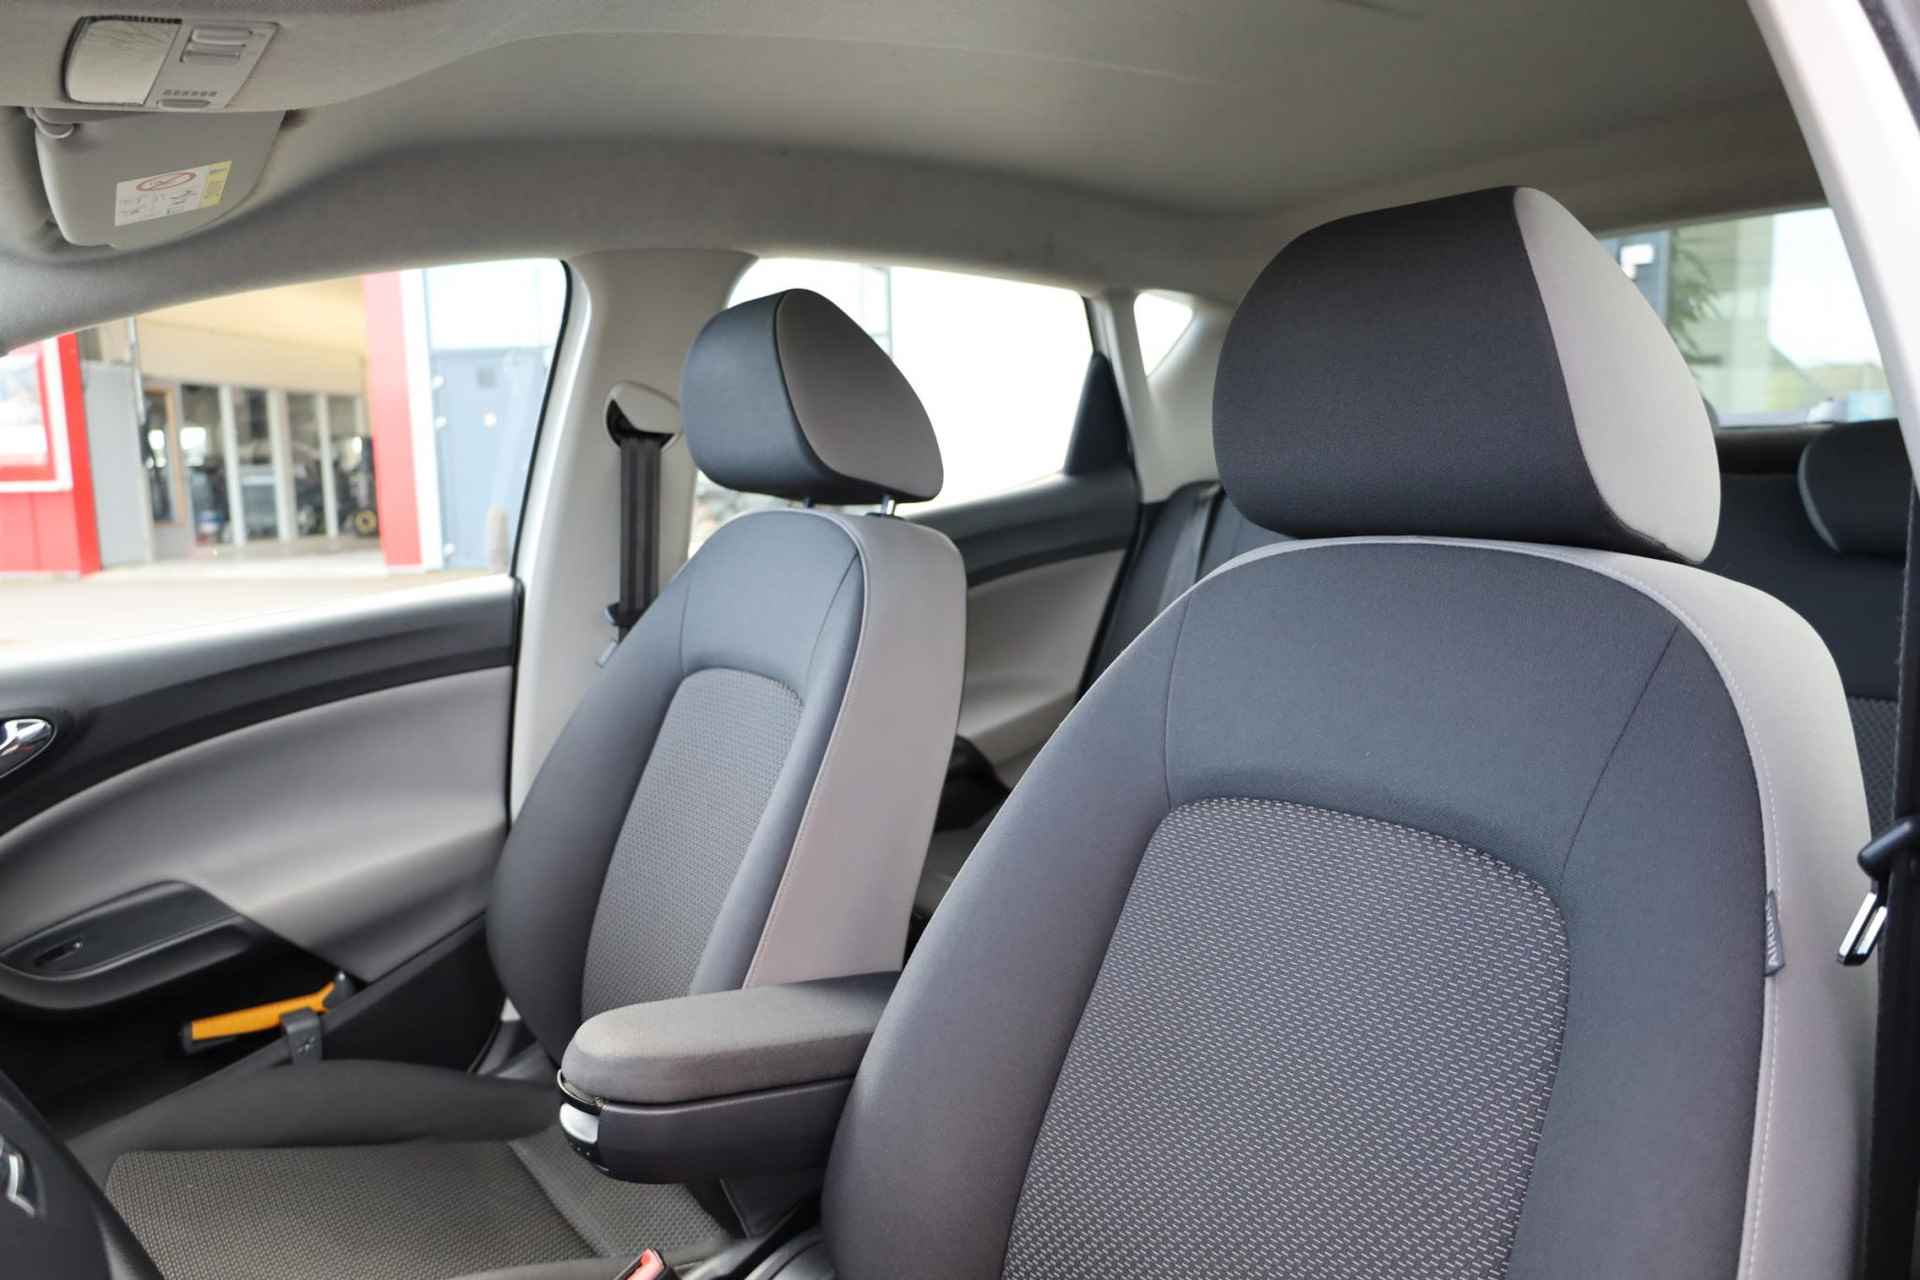 SEAT Ibiza 1.0 EcoTSI Style Connect 95PK / 70kW, 16" LMV zwart, navigatie, cruise control, parkeersensoren, multifunctioneel lederen stuurwiel, licht sensor, zwarte spiegelkappen + zwarte accenten, spiegels elektrisch inklapbaar - 11/38